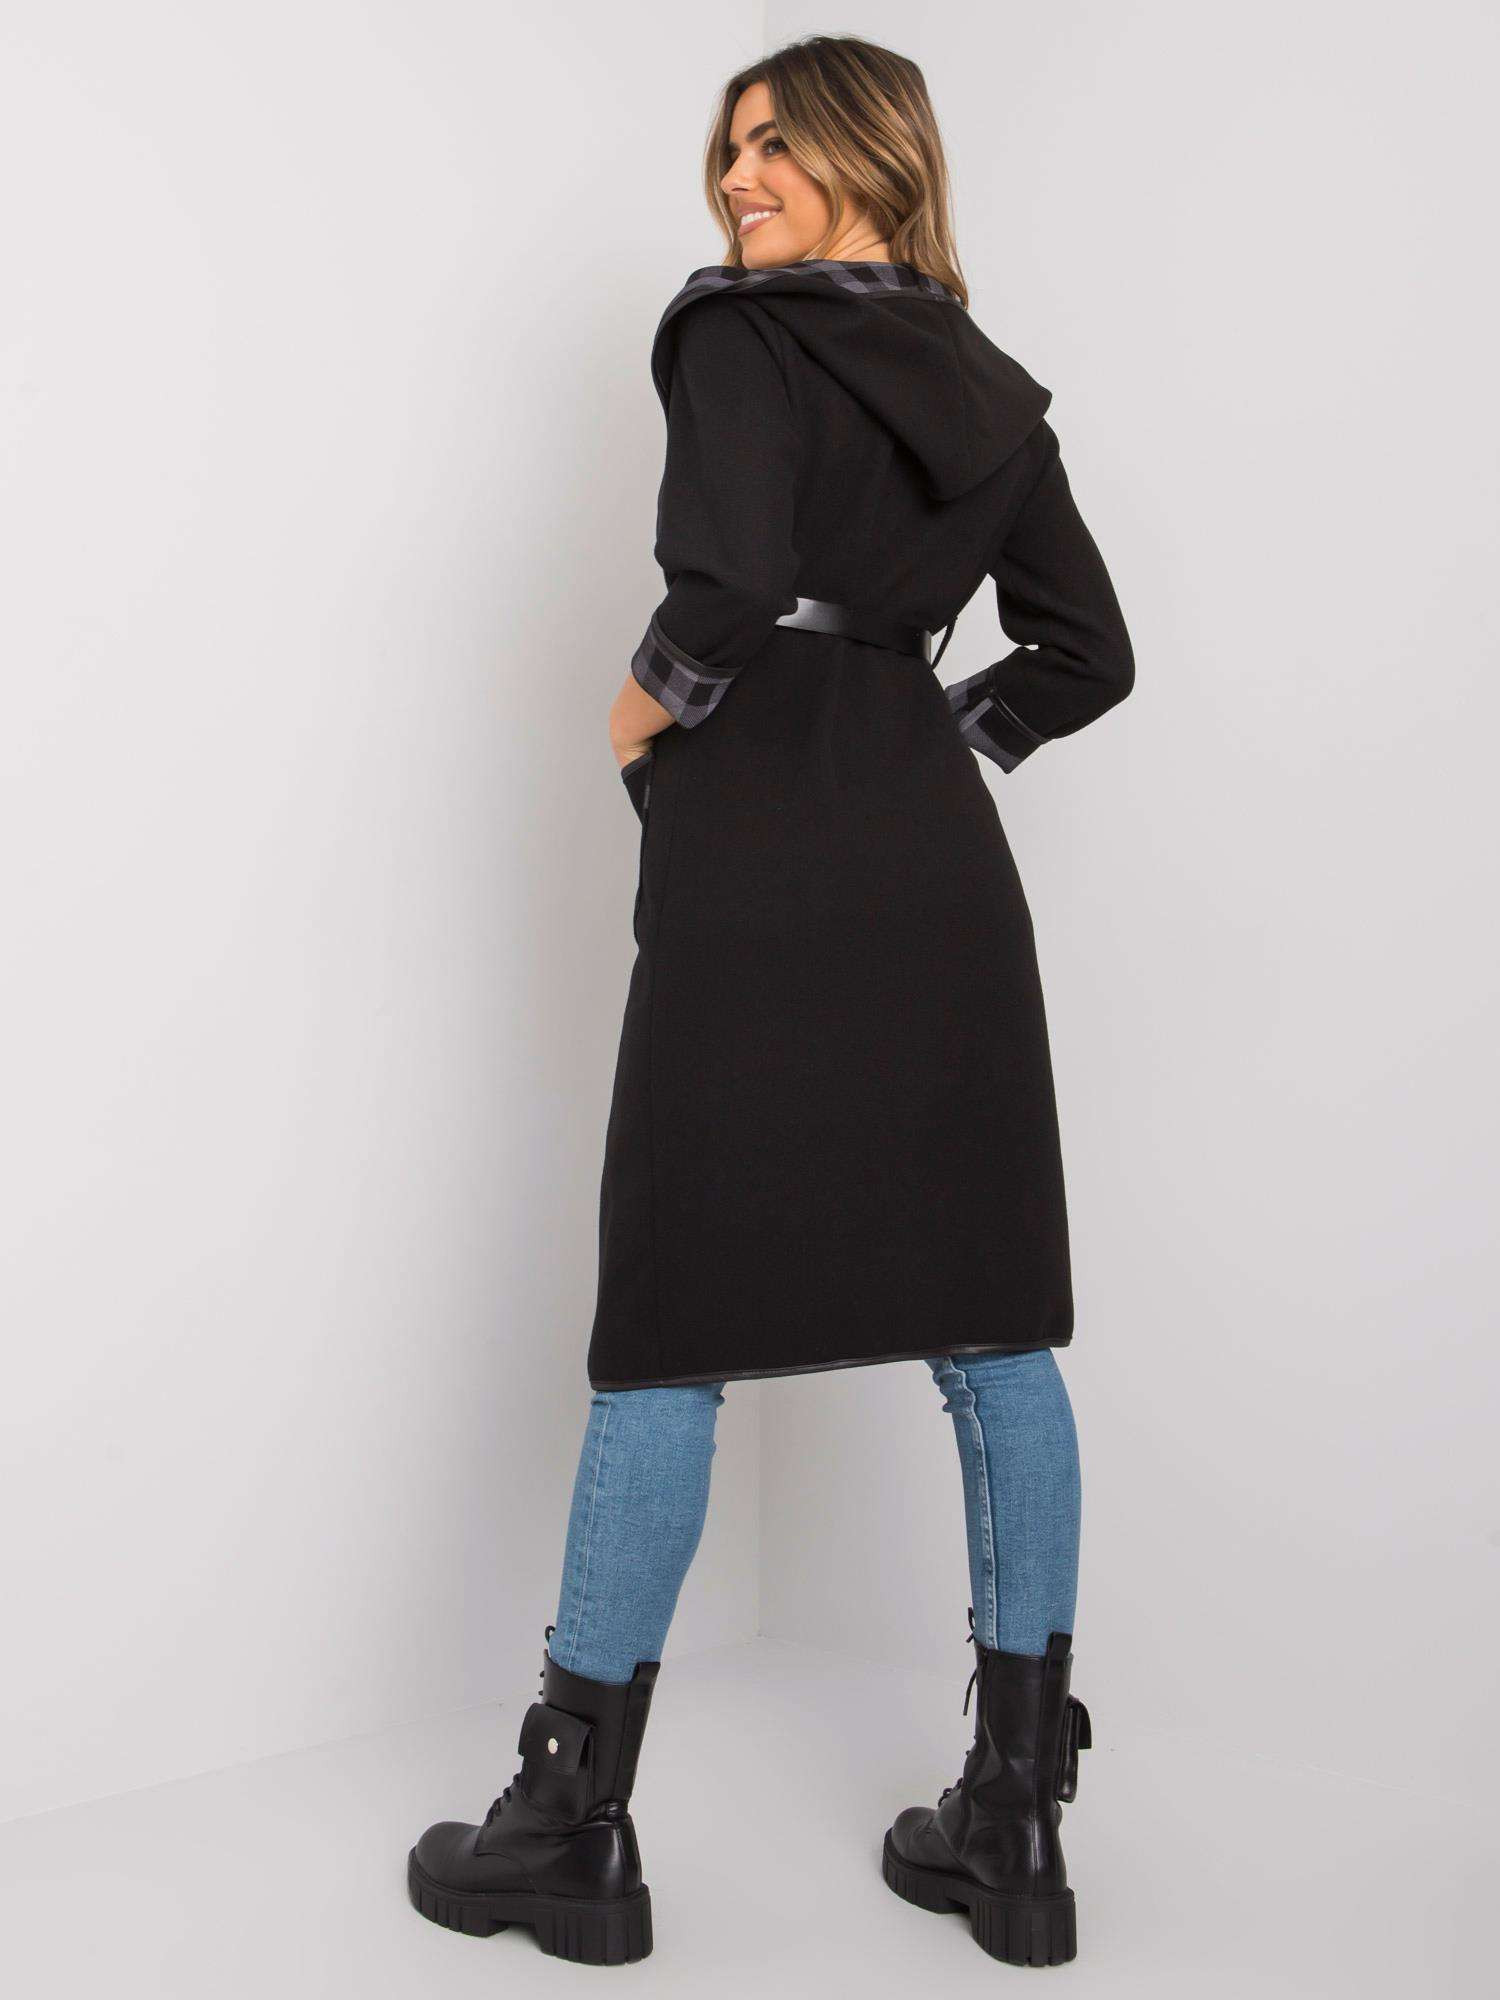 Dámský kabát DHJ EN model 15859476 černý - FPrice Velikost: jedna velikost